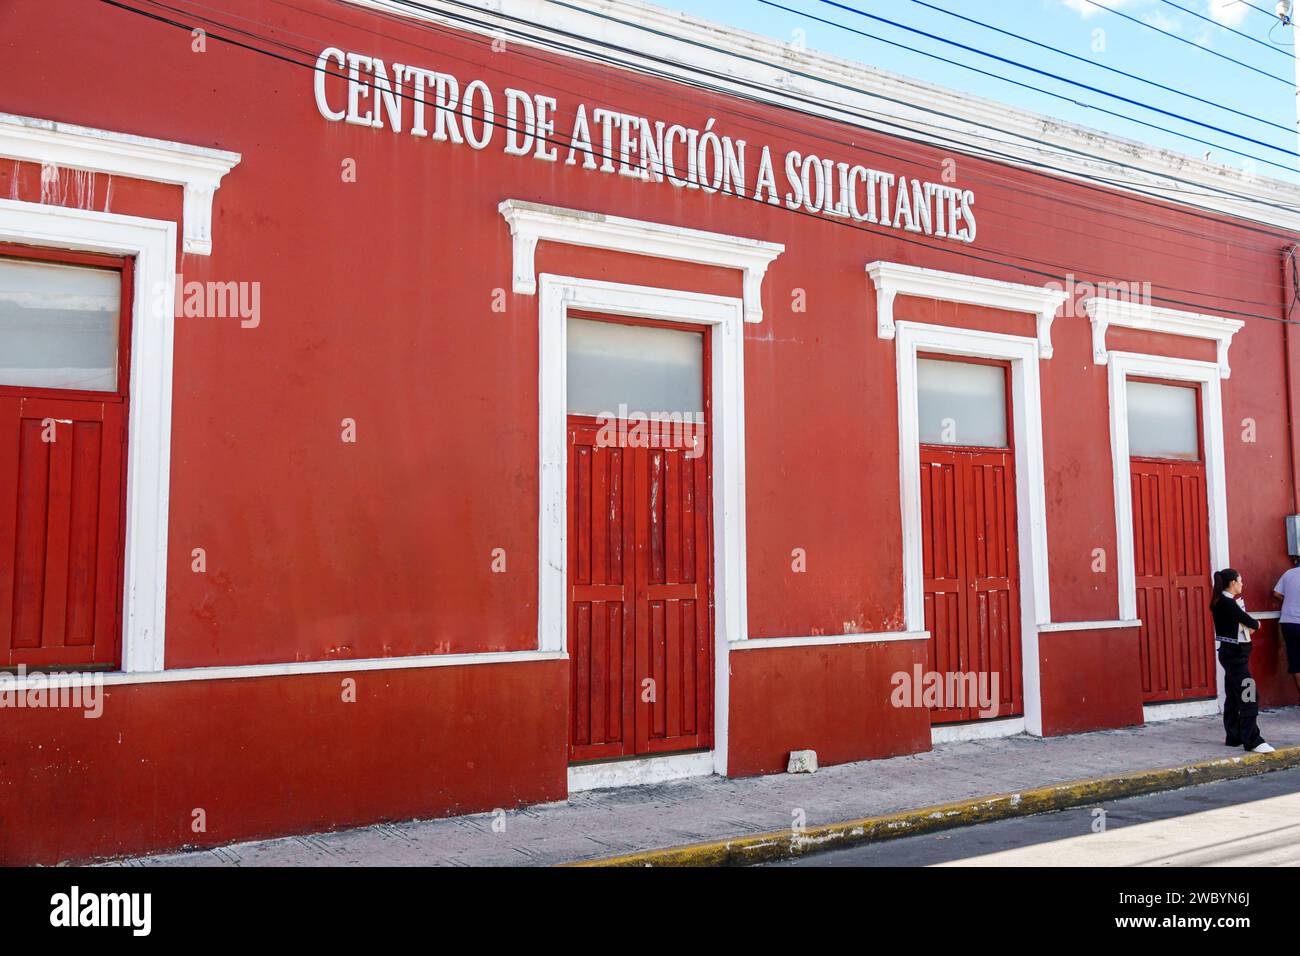 Merida Mexico, centro storico, centro storico, esterno, ingresso frontale dell'edificio, Centro de Atencion a Solicitantes, Calle 66, ufficiale Foto Stock